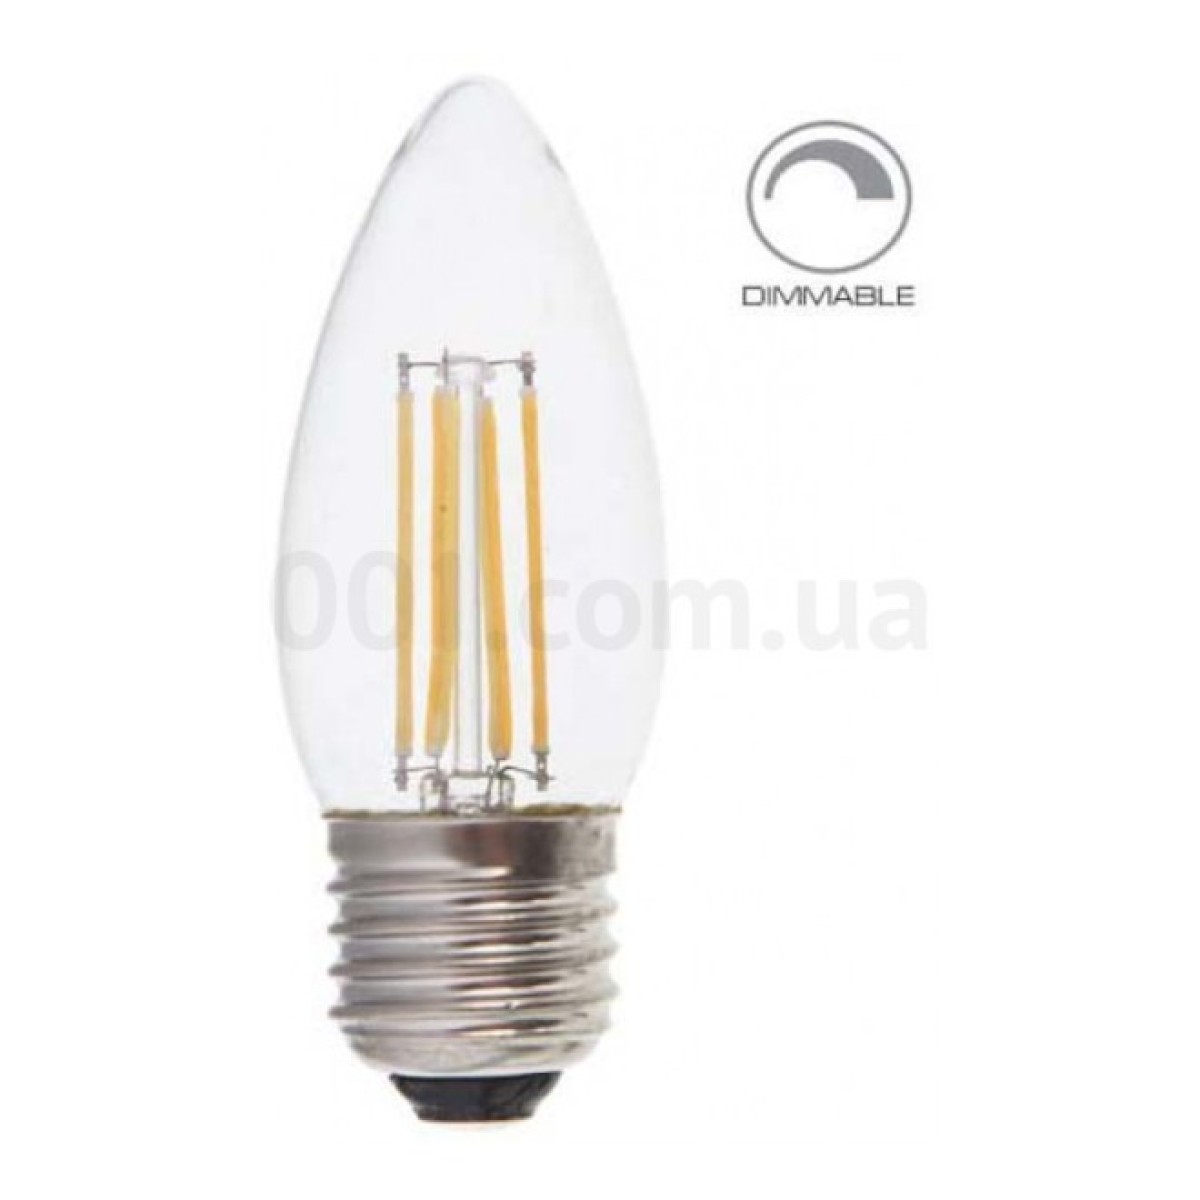 Світлодіодна лампа LB-68 DIMM C37 (свічка) філамент 4Вт 2700K E27, Feron 256_256.jpg